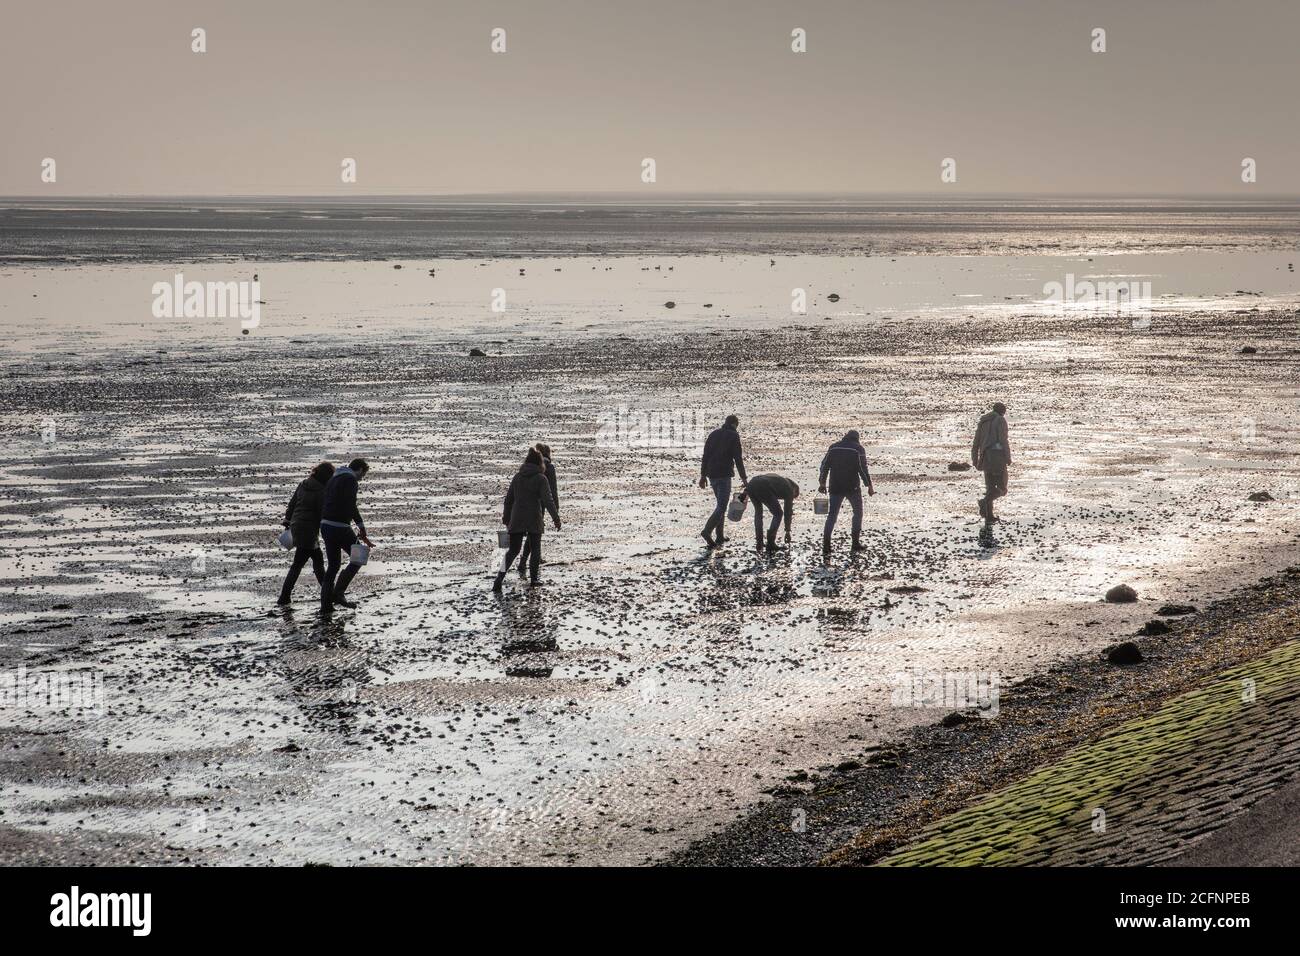 Paesi Bassi, Isola di Texel, De Cocksdorp, Mare di Wadden, bassa marea, fango appartamenti. Persone in cerca di ostriche. Wadden Sea, UNESCO, Patrimonio dell'Umanità. Foto Stock